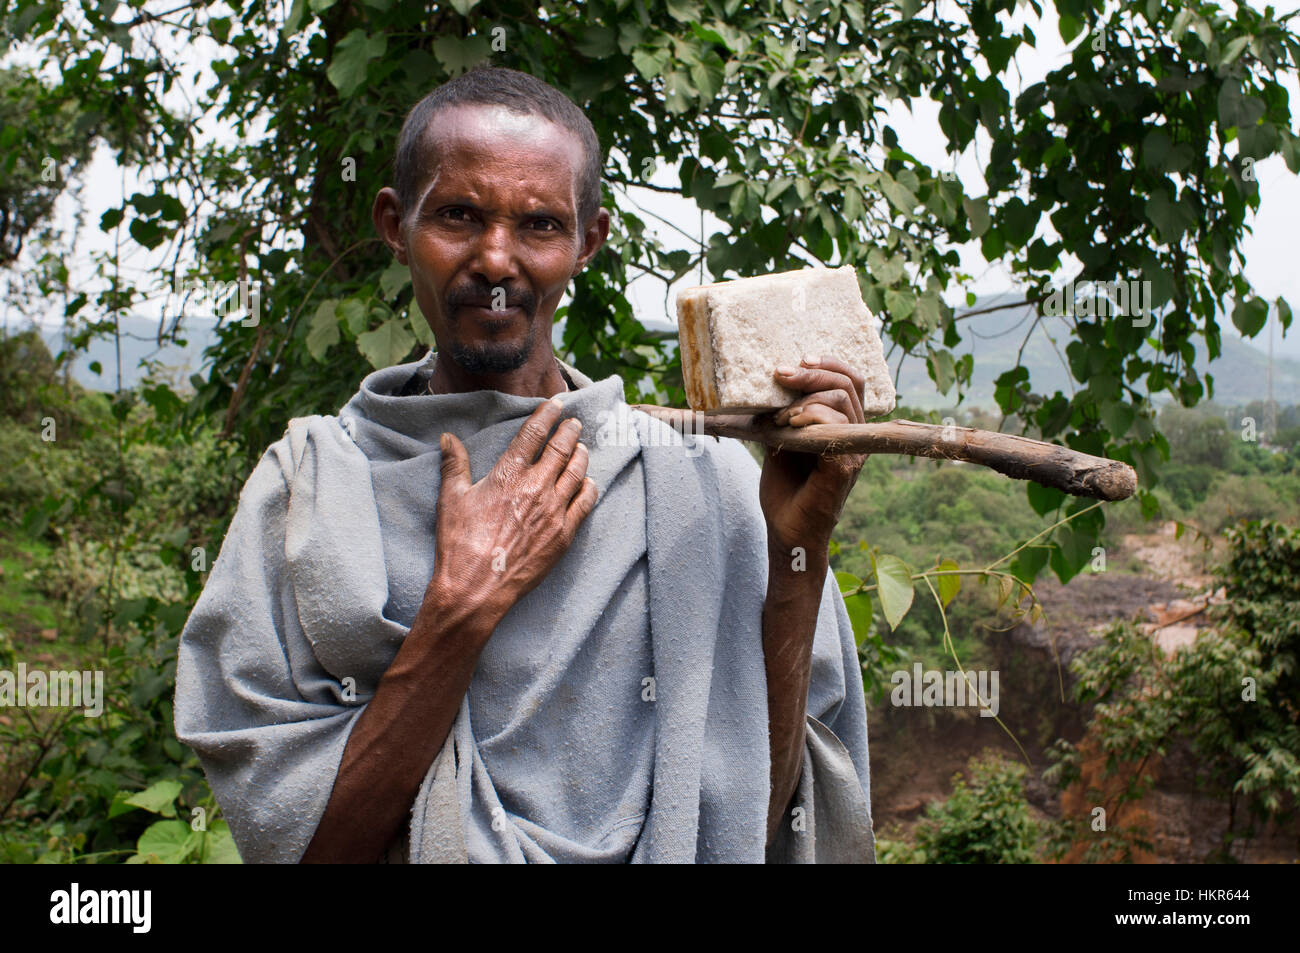 Hombre local en Tis Isat o Cataratas del Nilo Azul, Bahar Dar, Etiopía, África. Retrato de un etíope de la zona al pie de las Cataratas del Nilo Azul Foto de stock